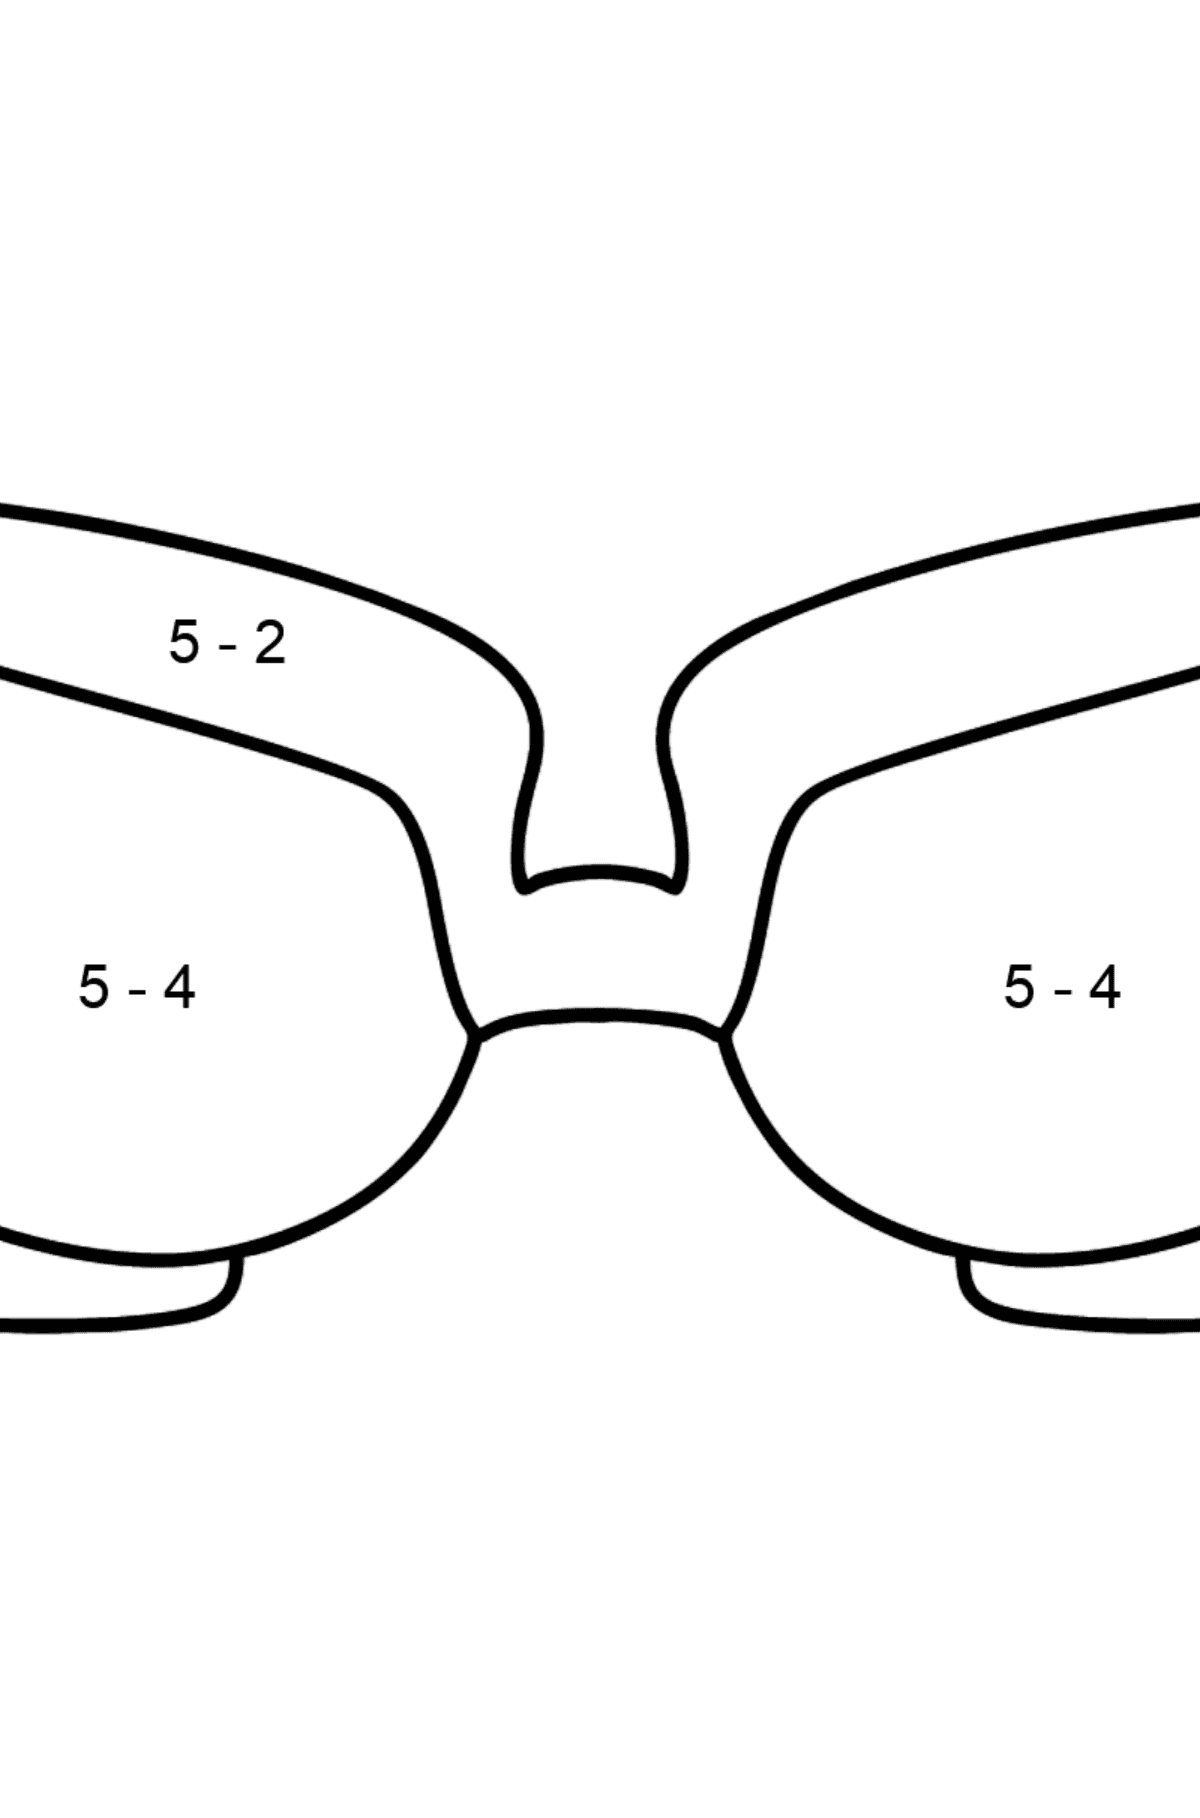 Óculos para colorir - Colorindo com Matemática - Subtração para Crianças